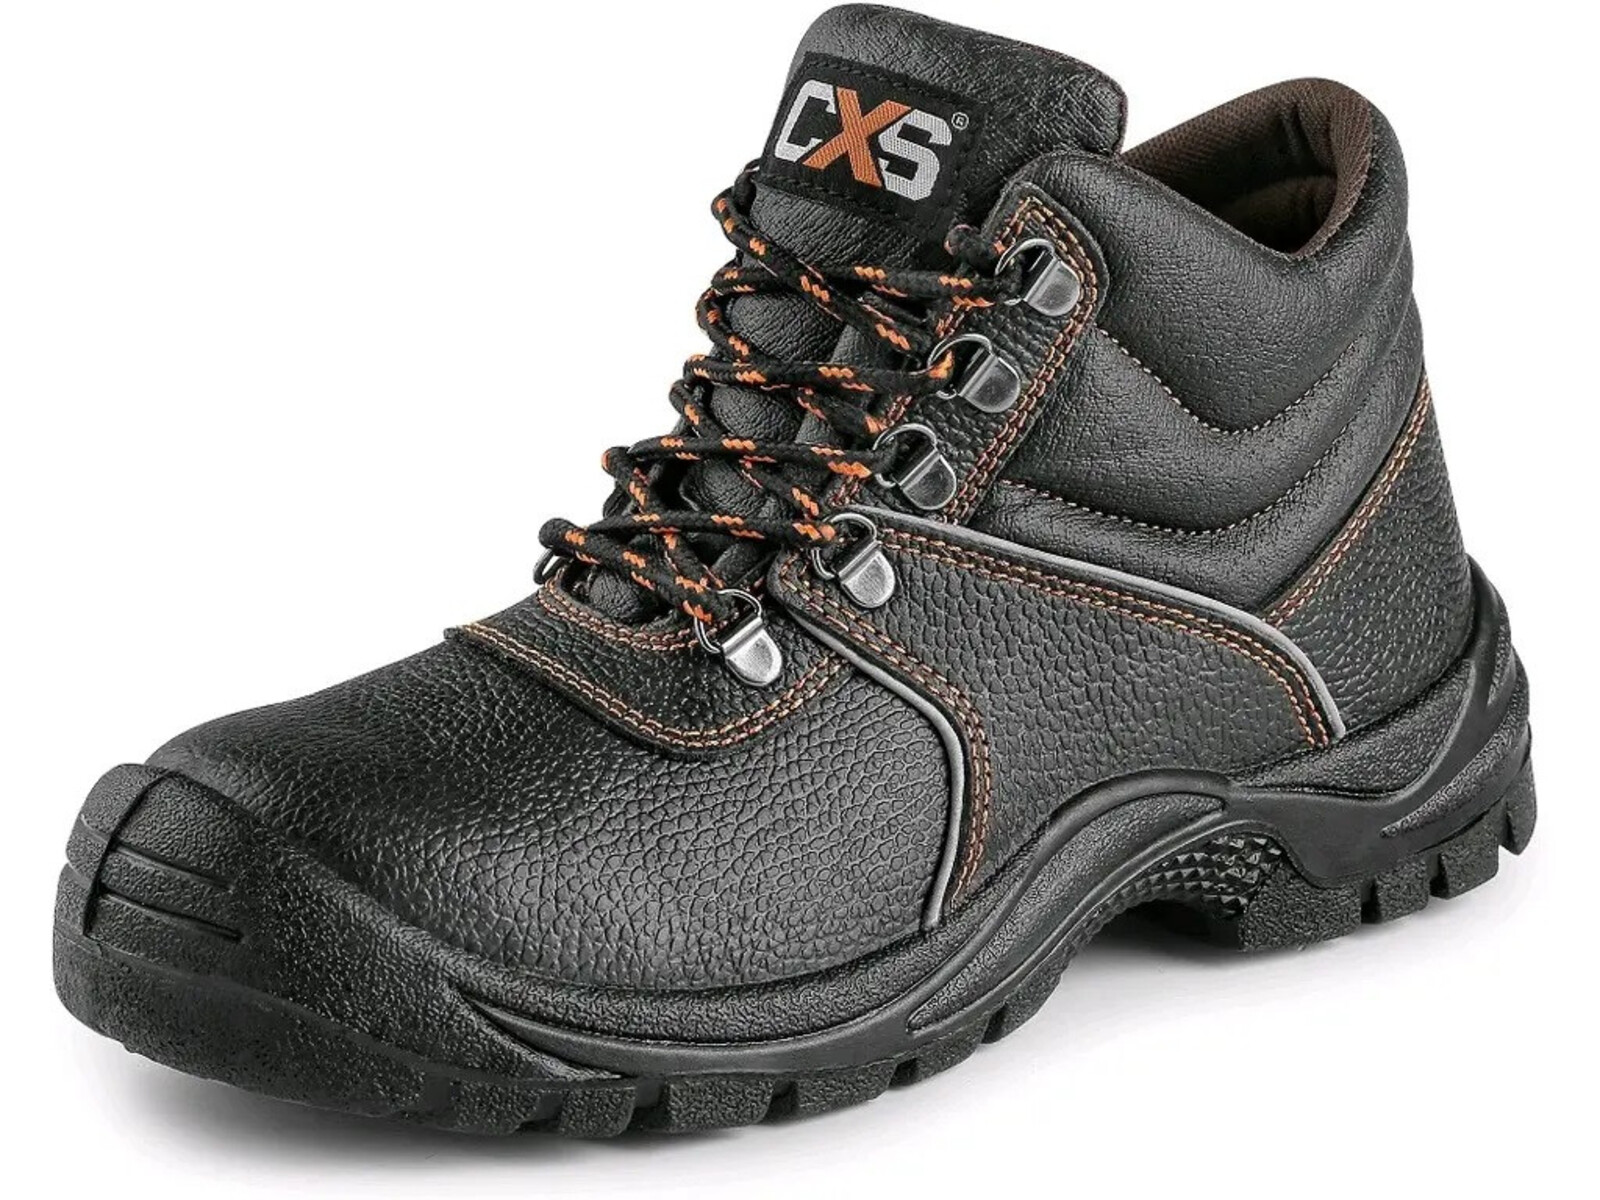 Bezpečnostná členková obuv CXS Stone Marble S3 SRC - veľkosť: 48, farba: čierna/oranžová